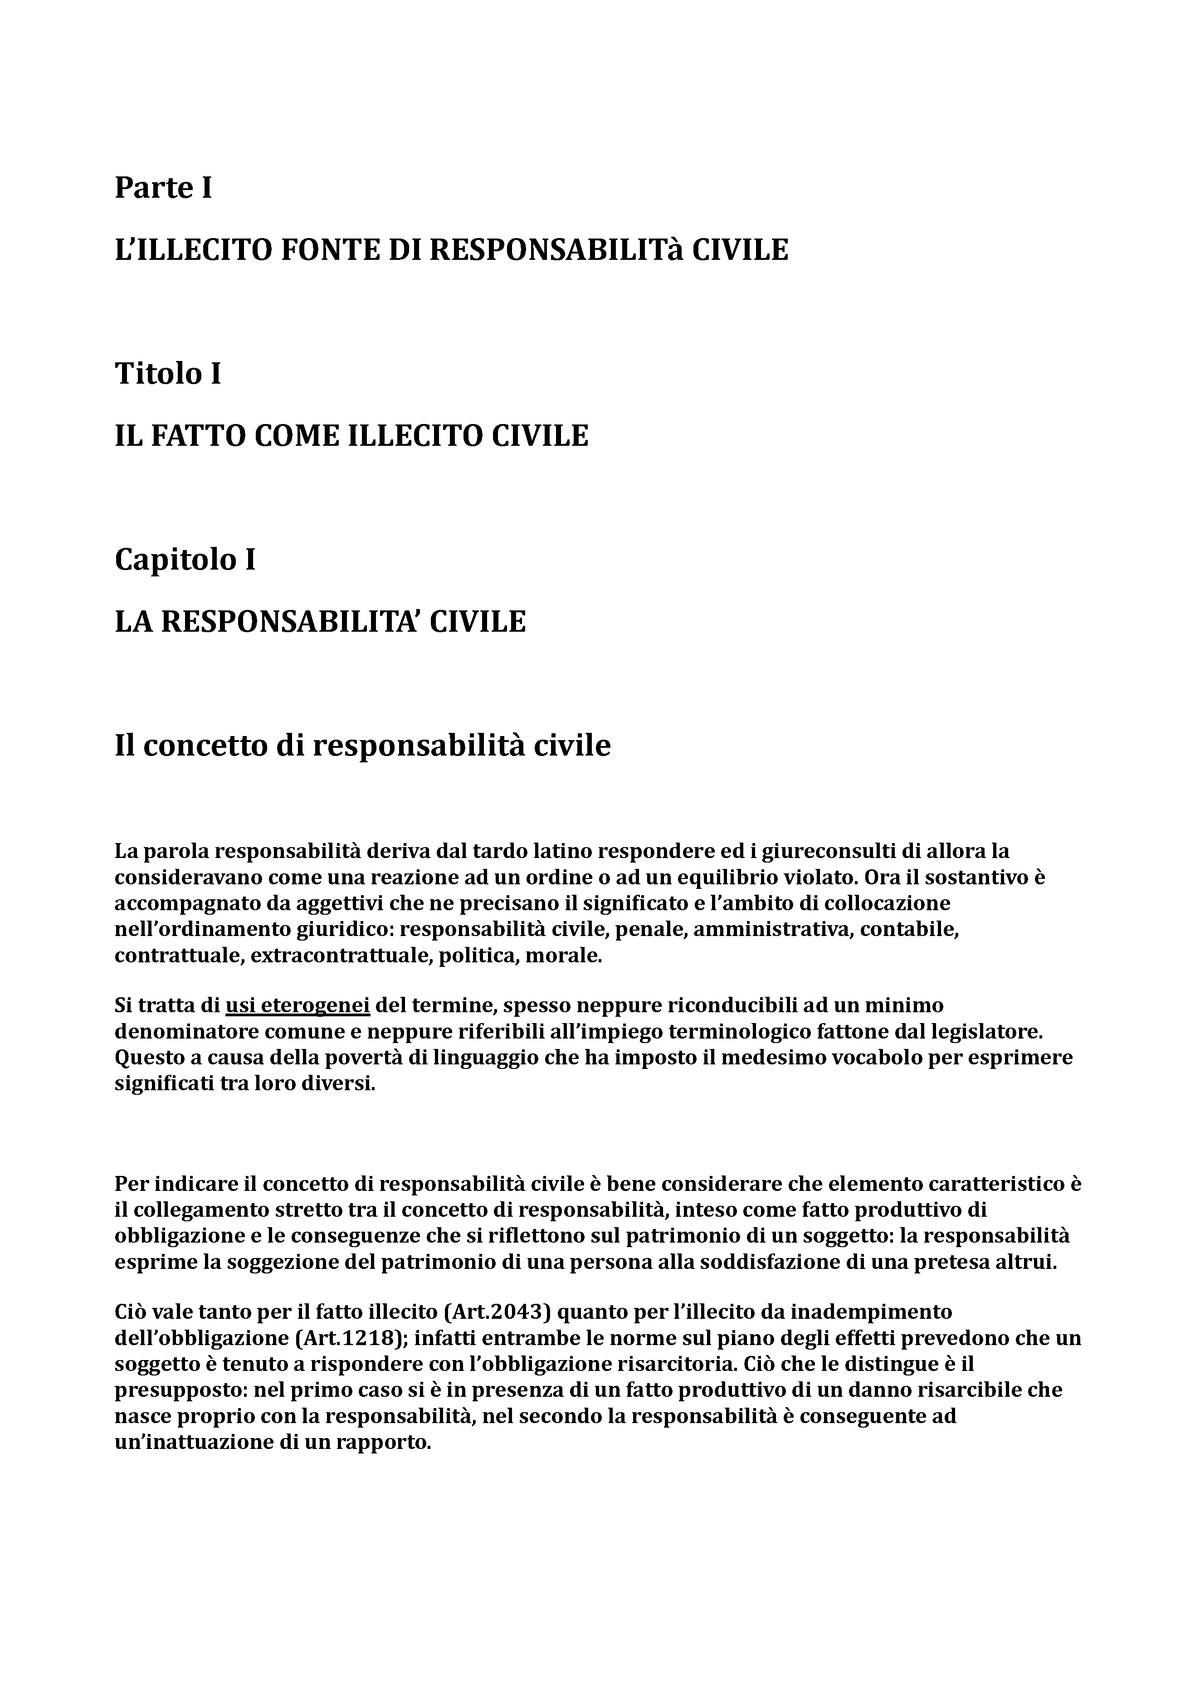 Riassunto Lillecito Diritto Civile 00219 Unibo Studocu